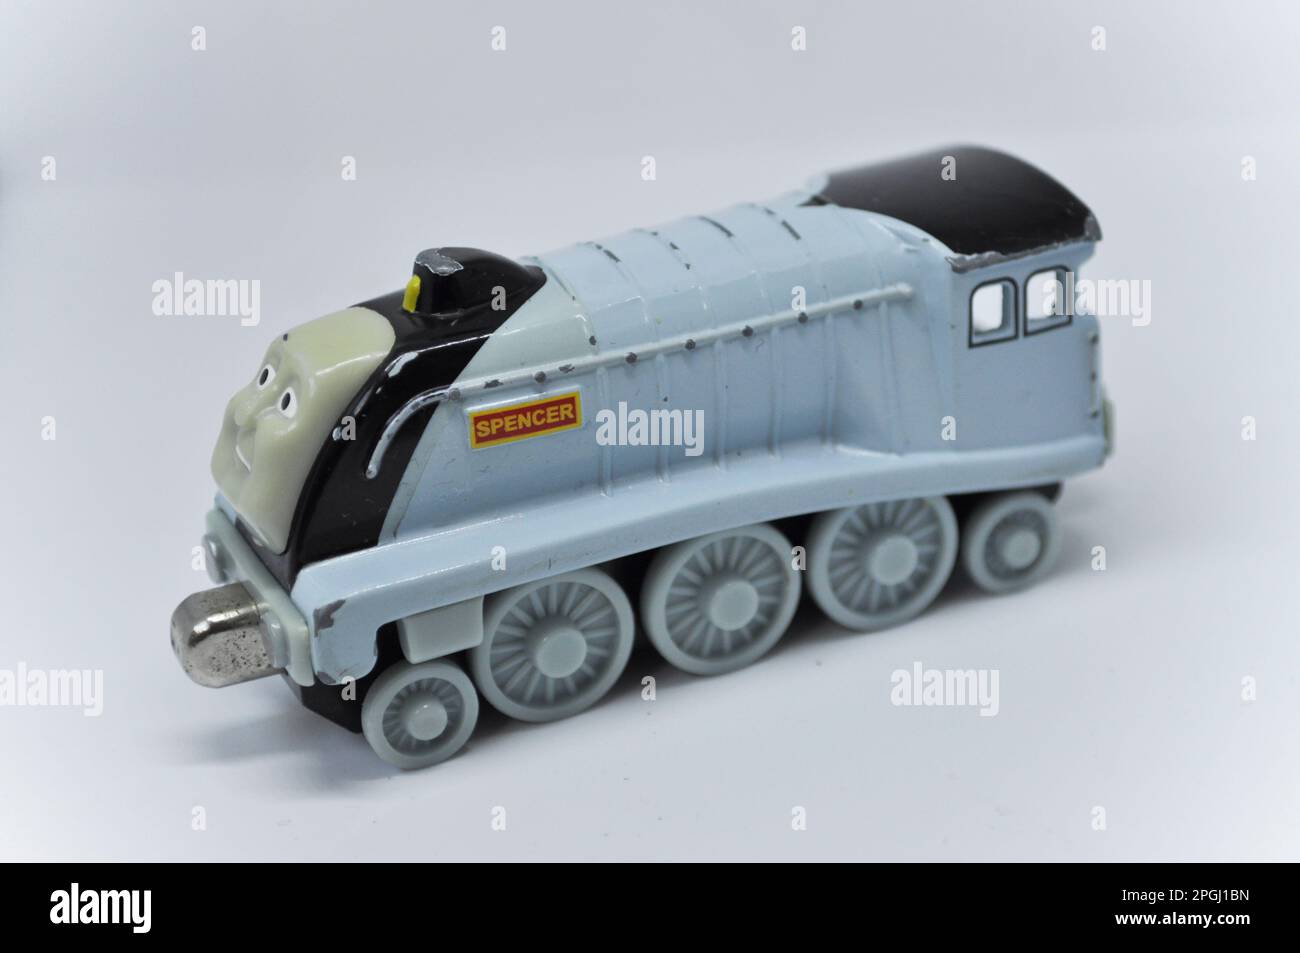 Un modèle coulé sous pression de Spencer de la série Thomas the Tank Engine sur fond blanc Banque D'Images